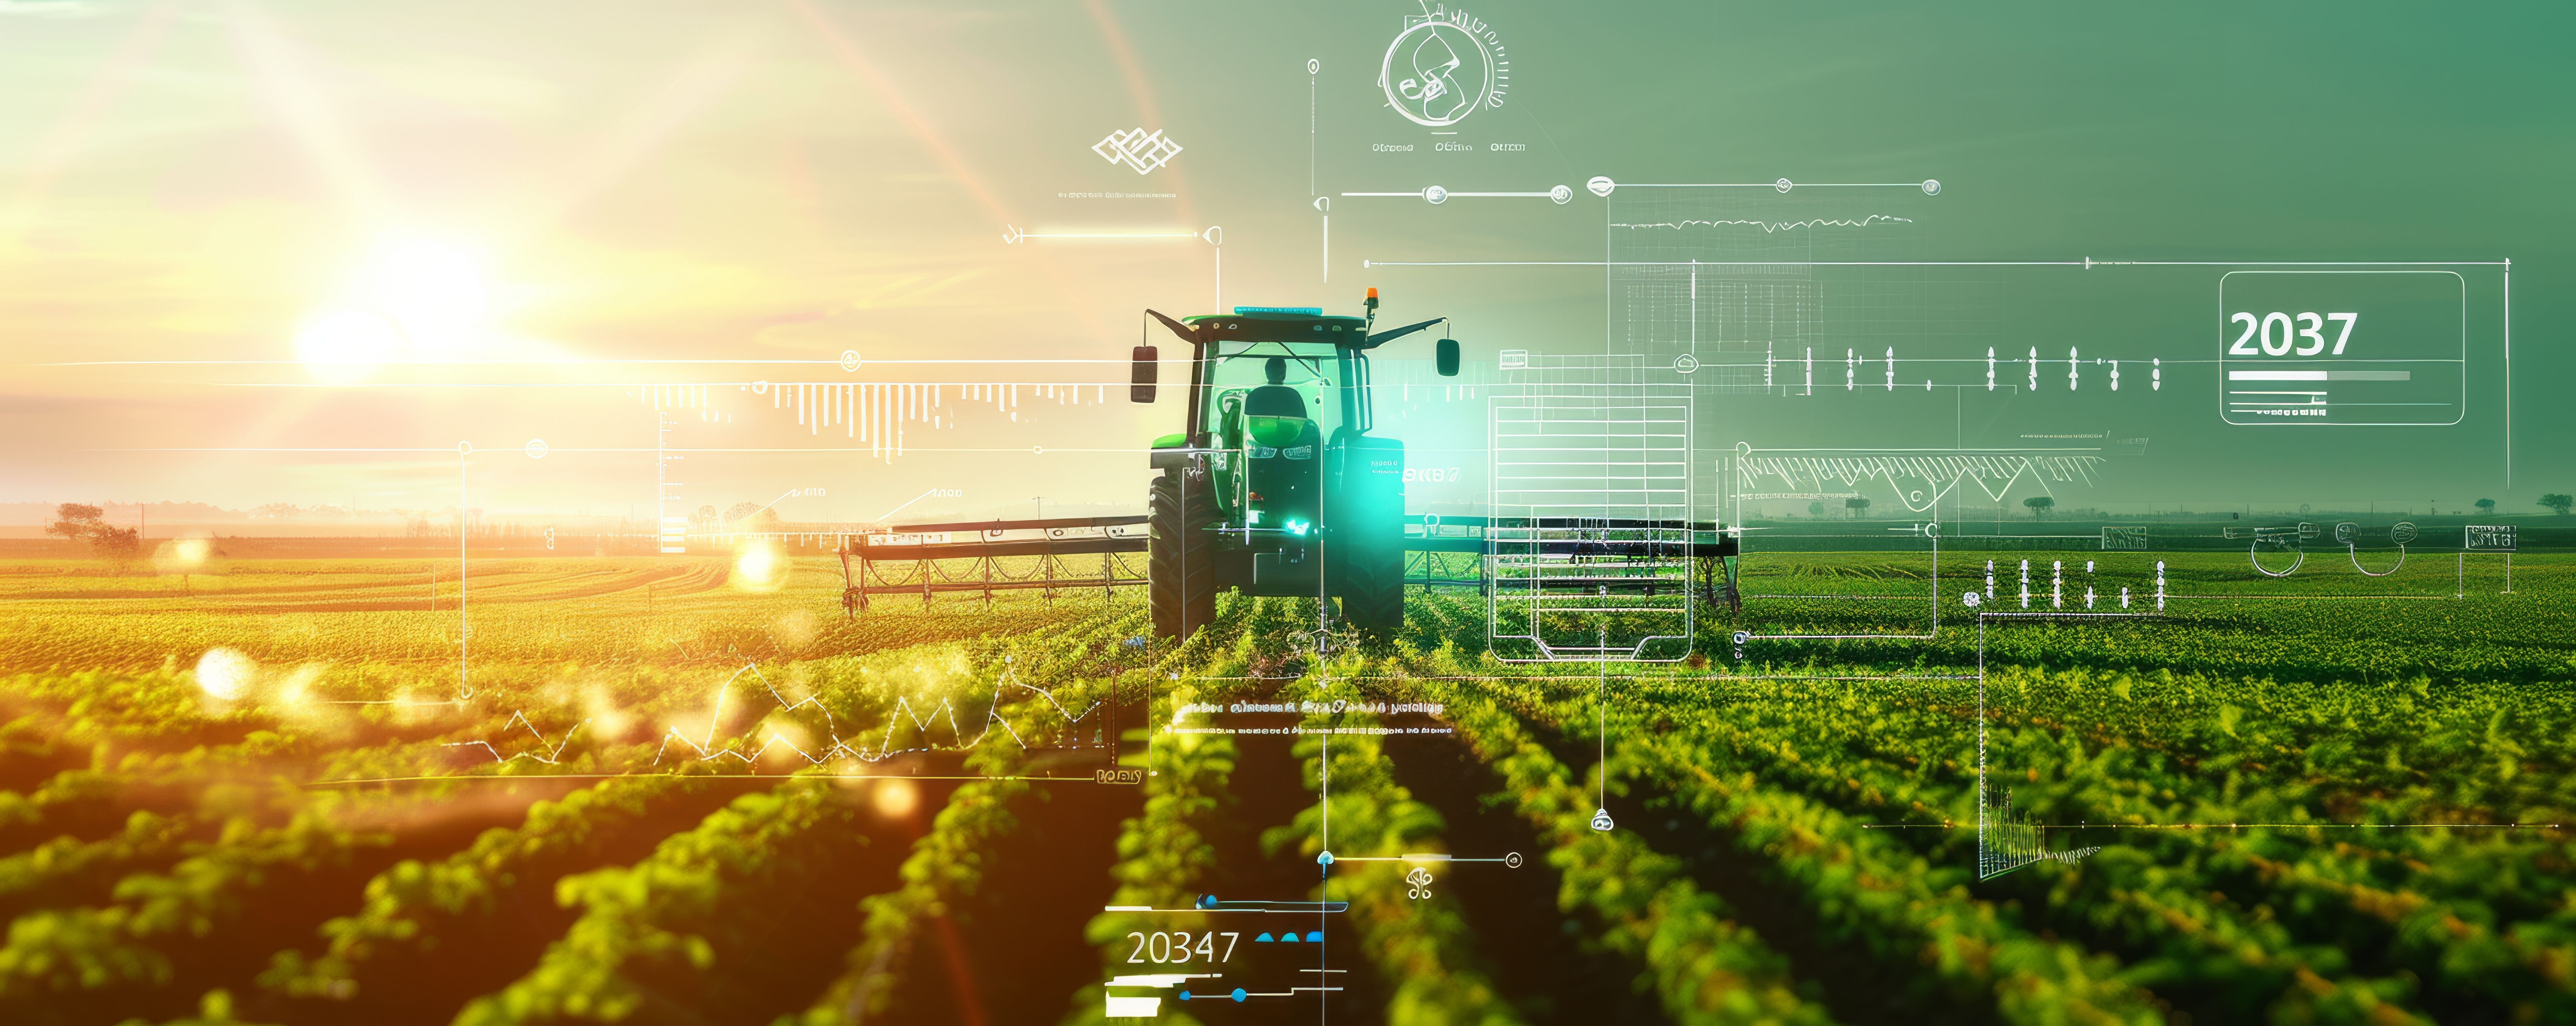 Цифровое сельское хозяйство и технологии 4.0: Где мы на самом деле находимся? 1